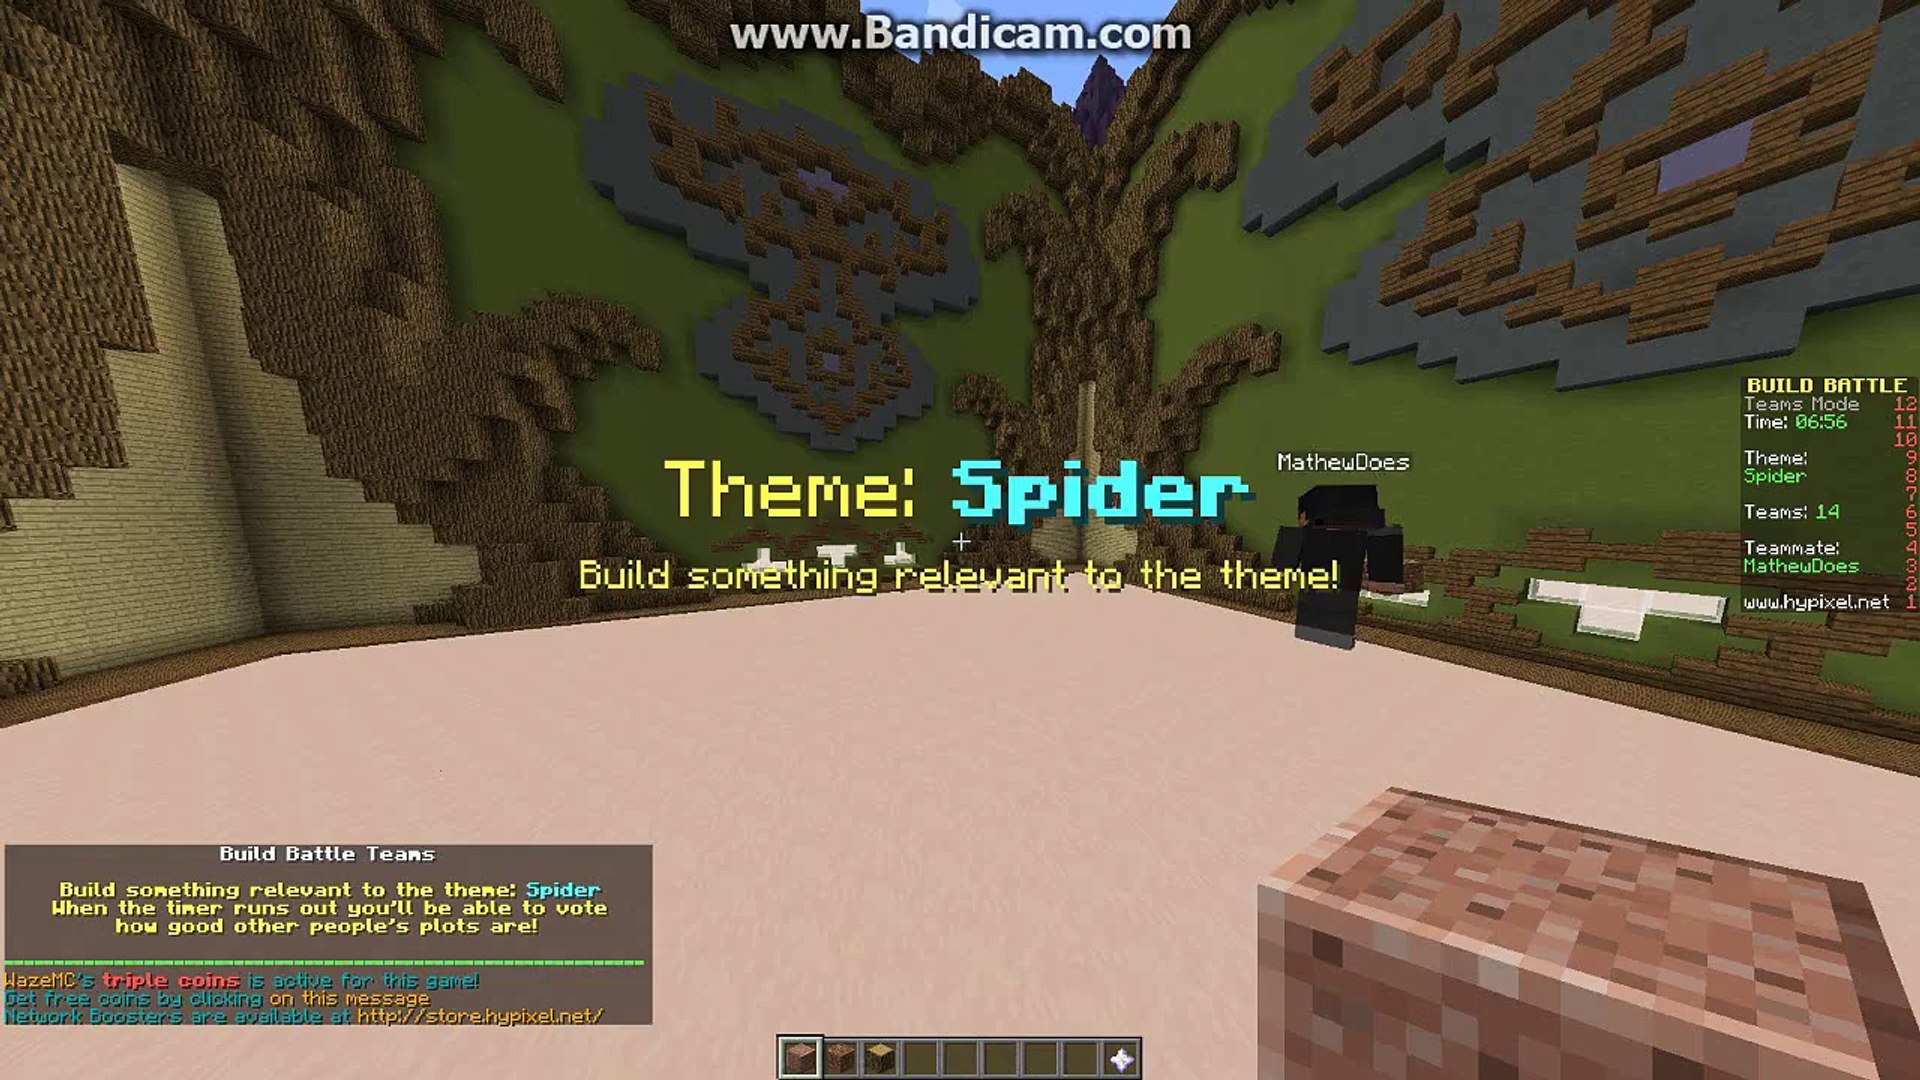 Minecraft Team Build Battle Spider Theme Video Dailymotion - build battle roblox